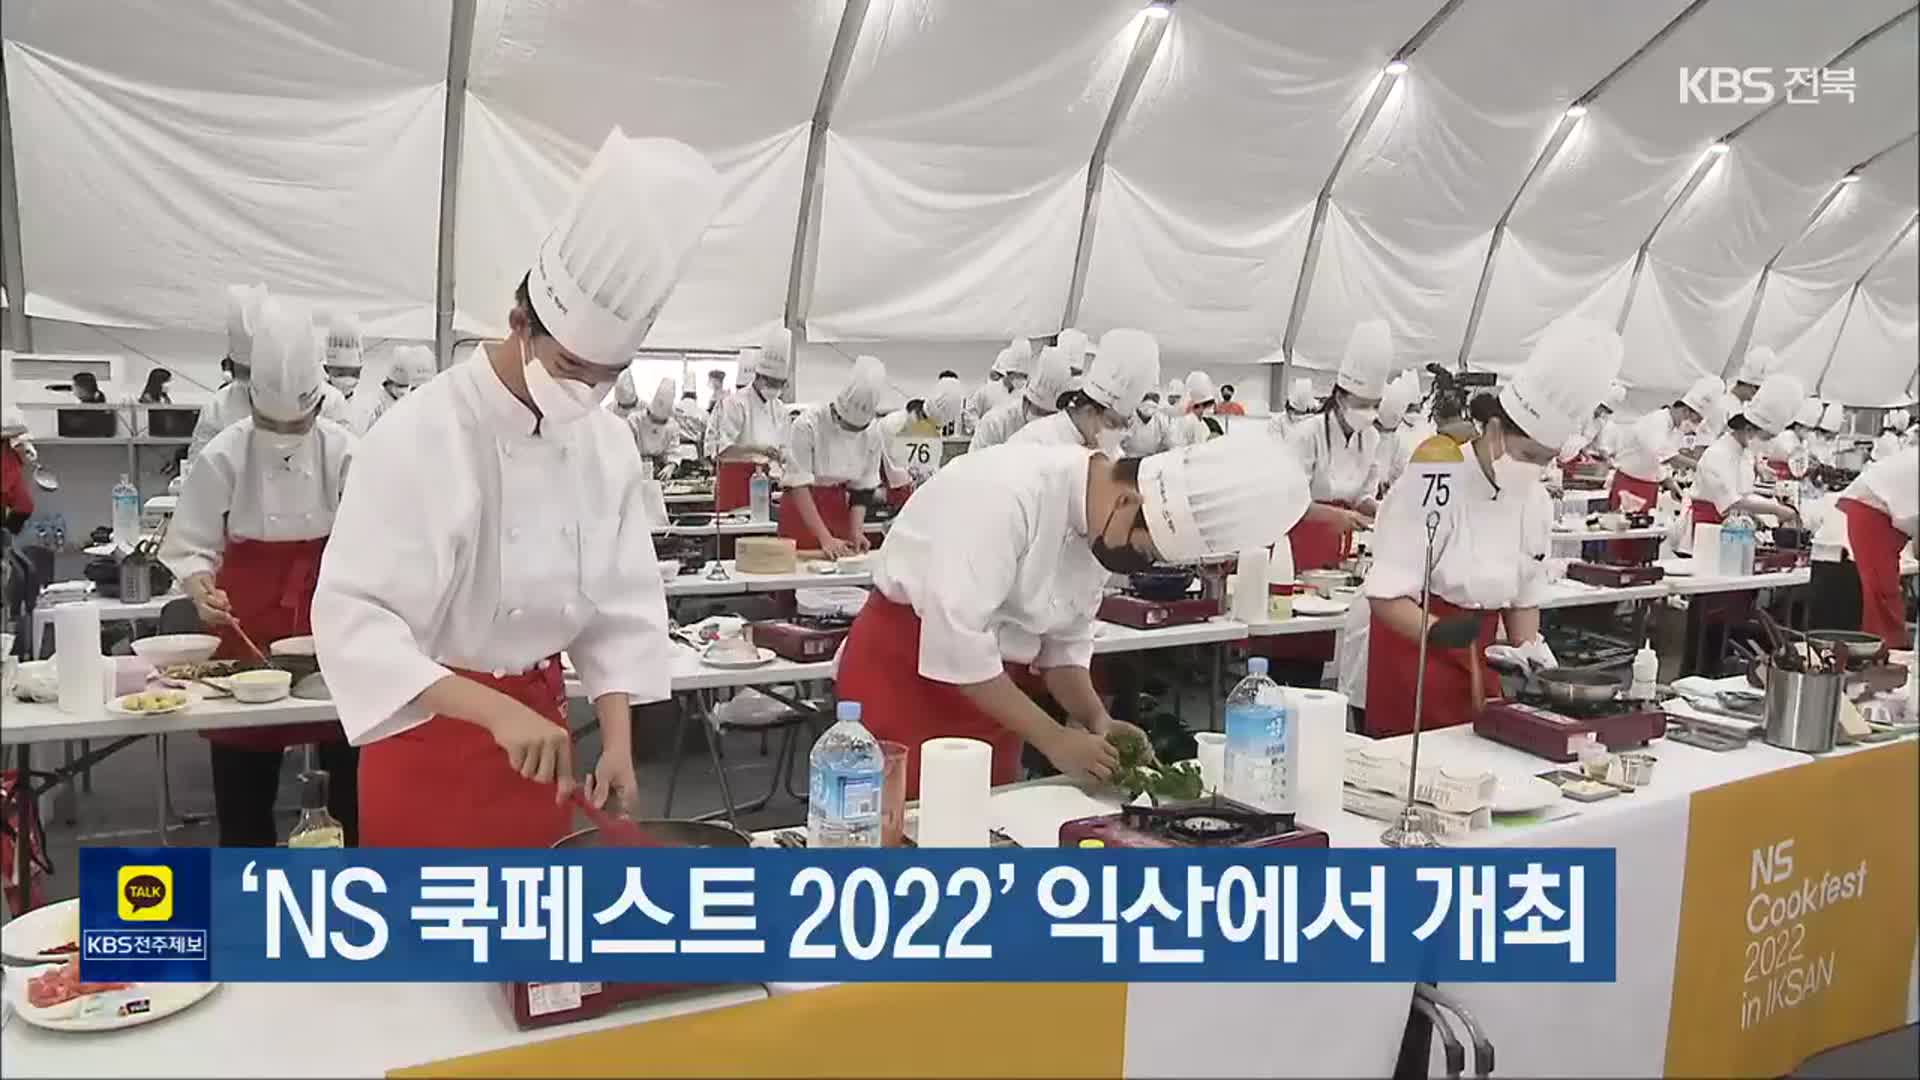 ‘NS 쿡페스트 2022’ 익산에서 개최